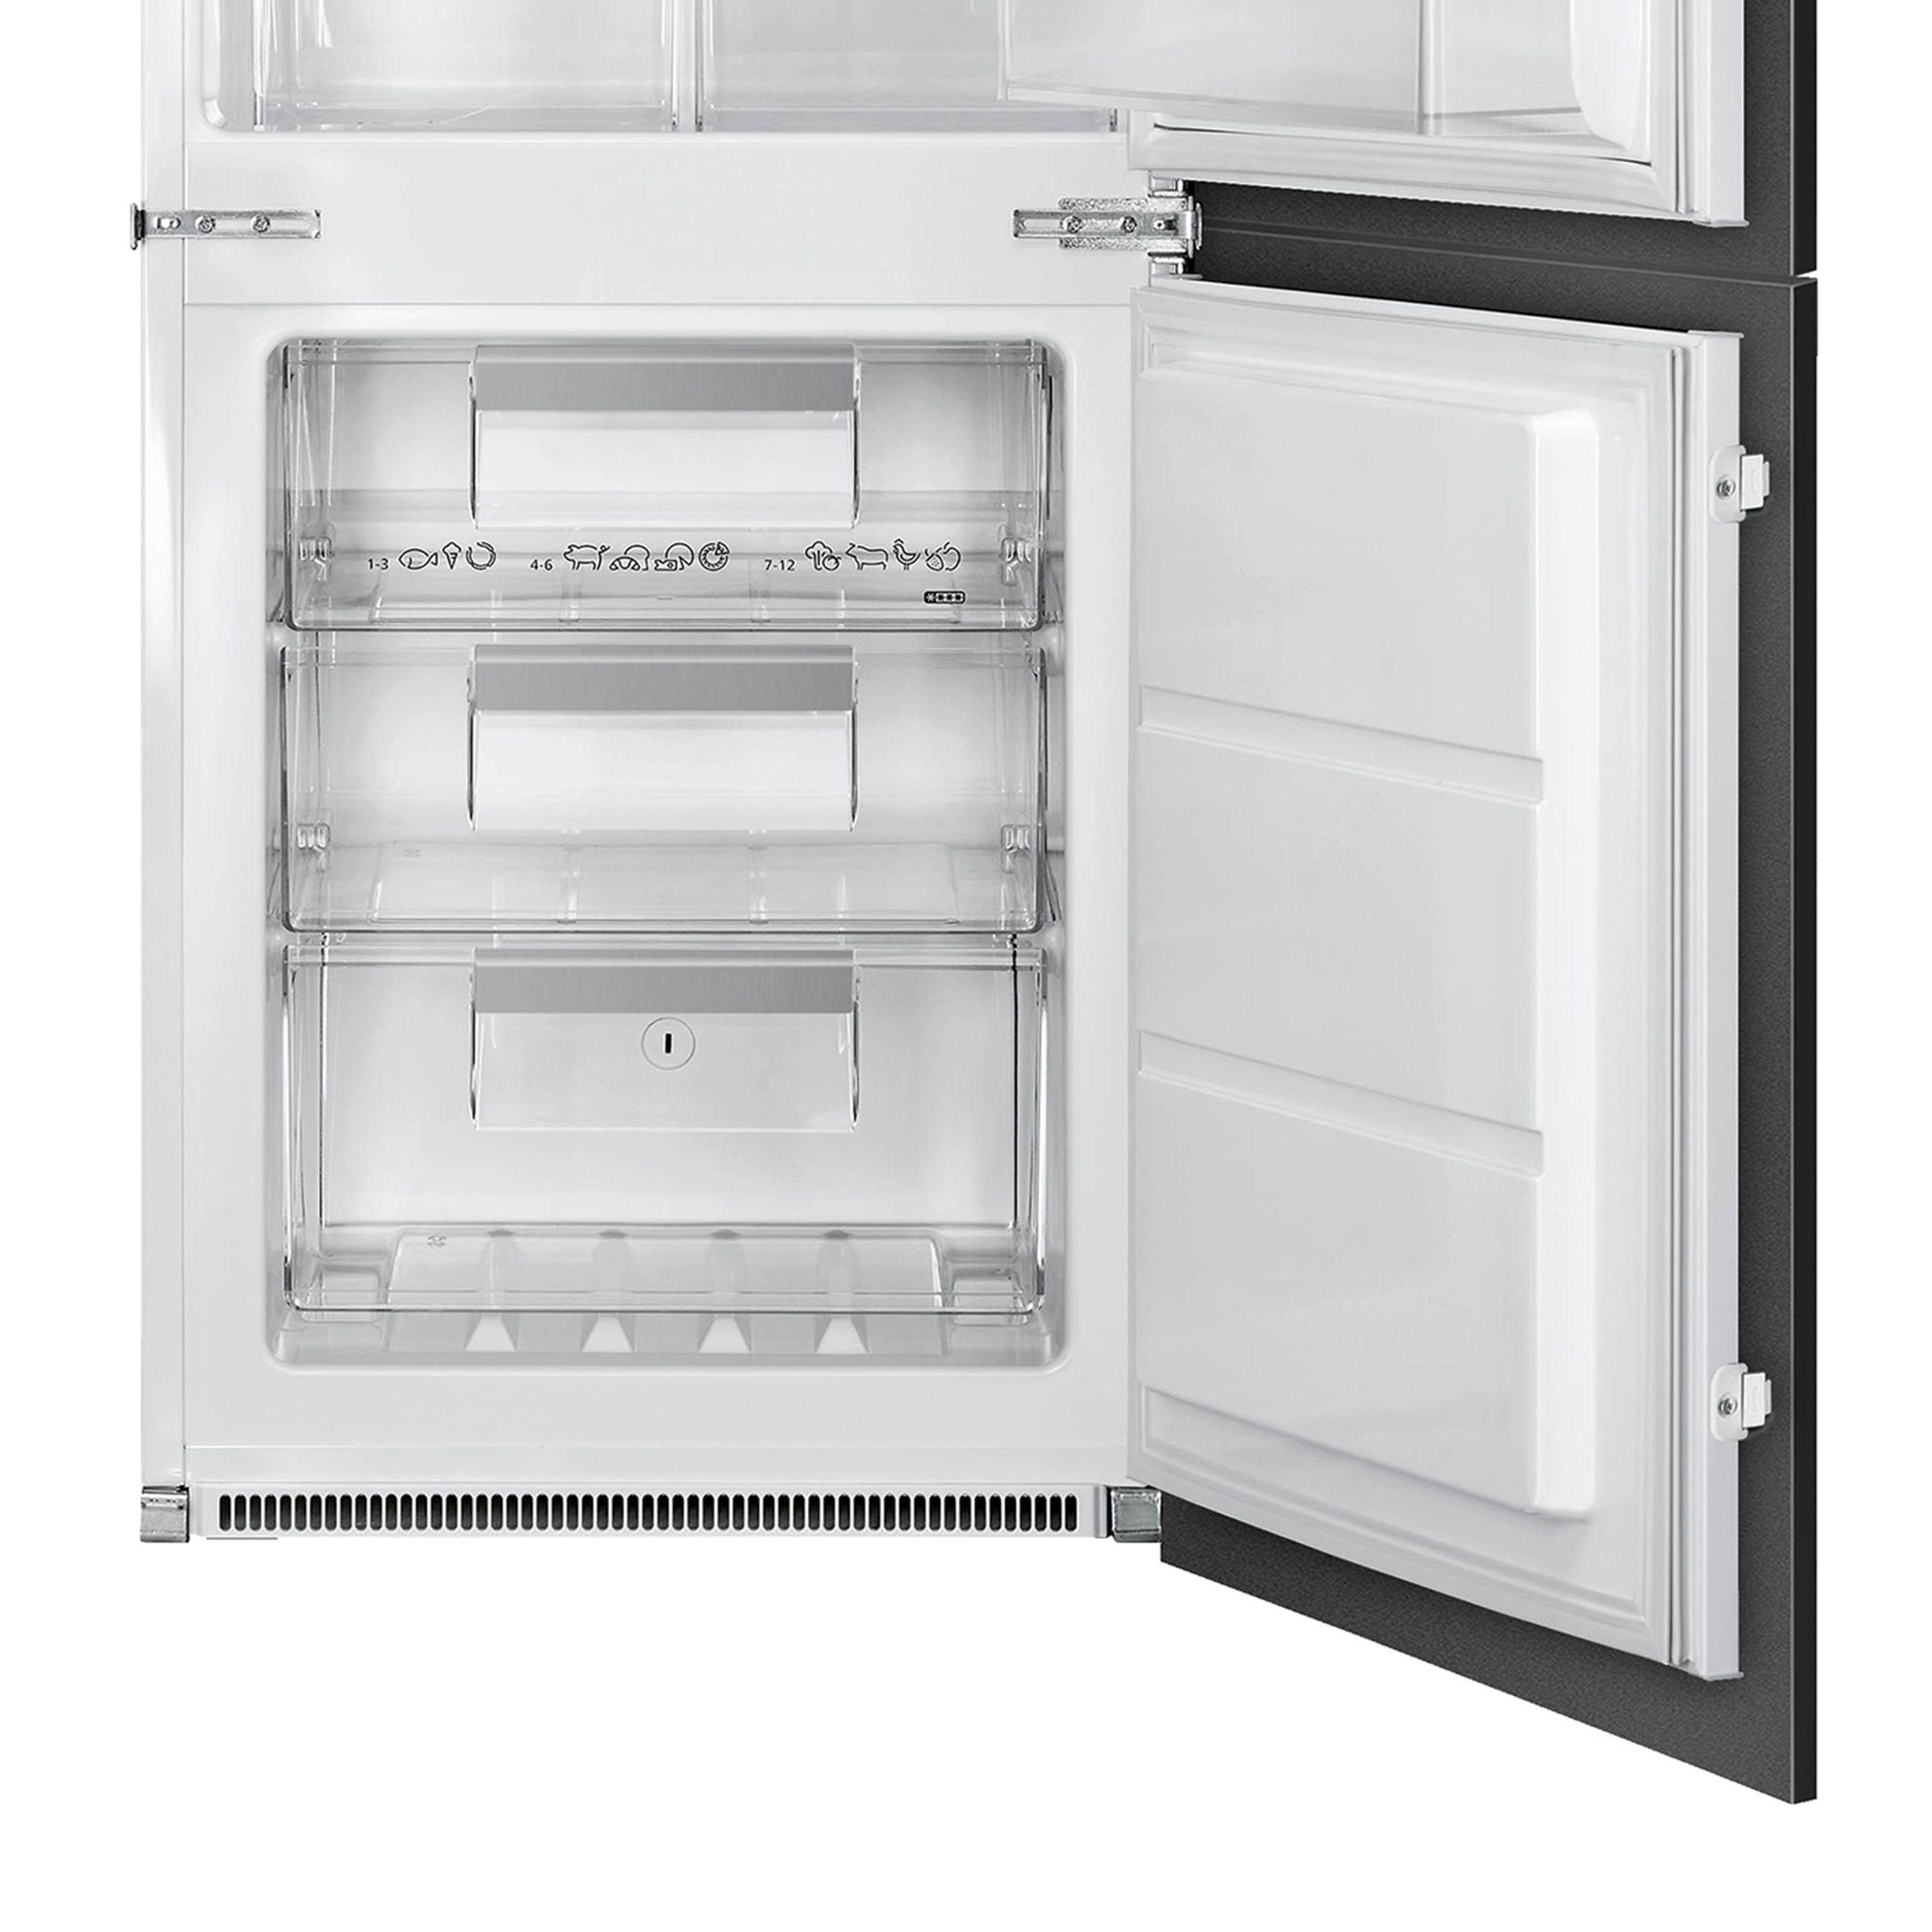 Smeg UKC8173N1F_WH 60:40 Built-in Frost free Fridge freezer - White